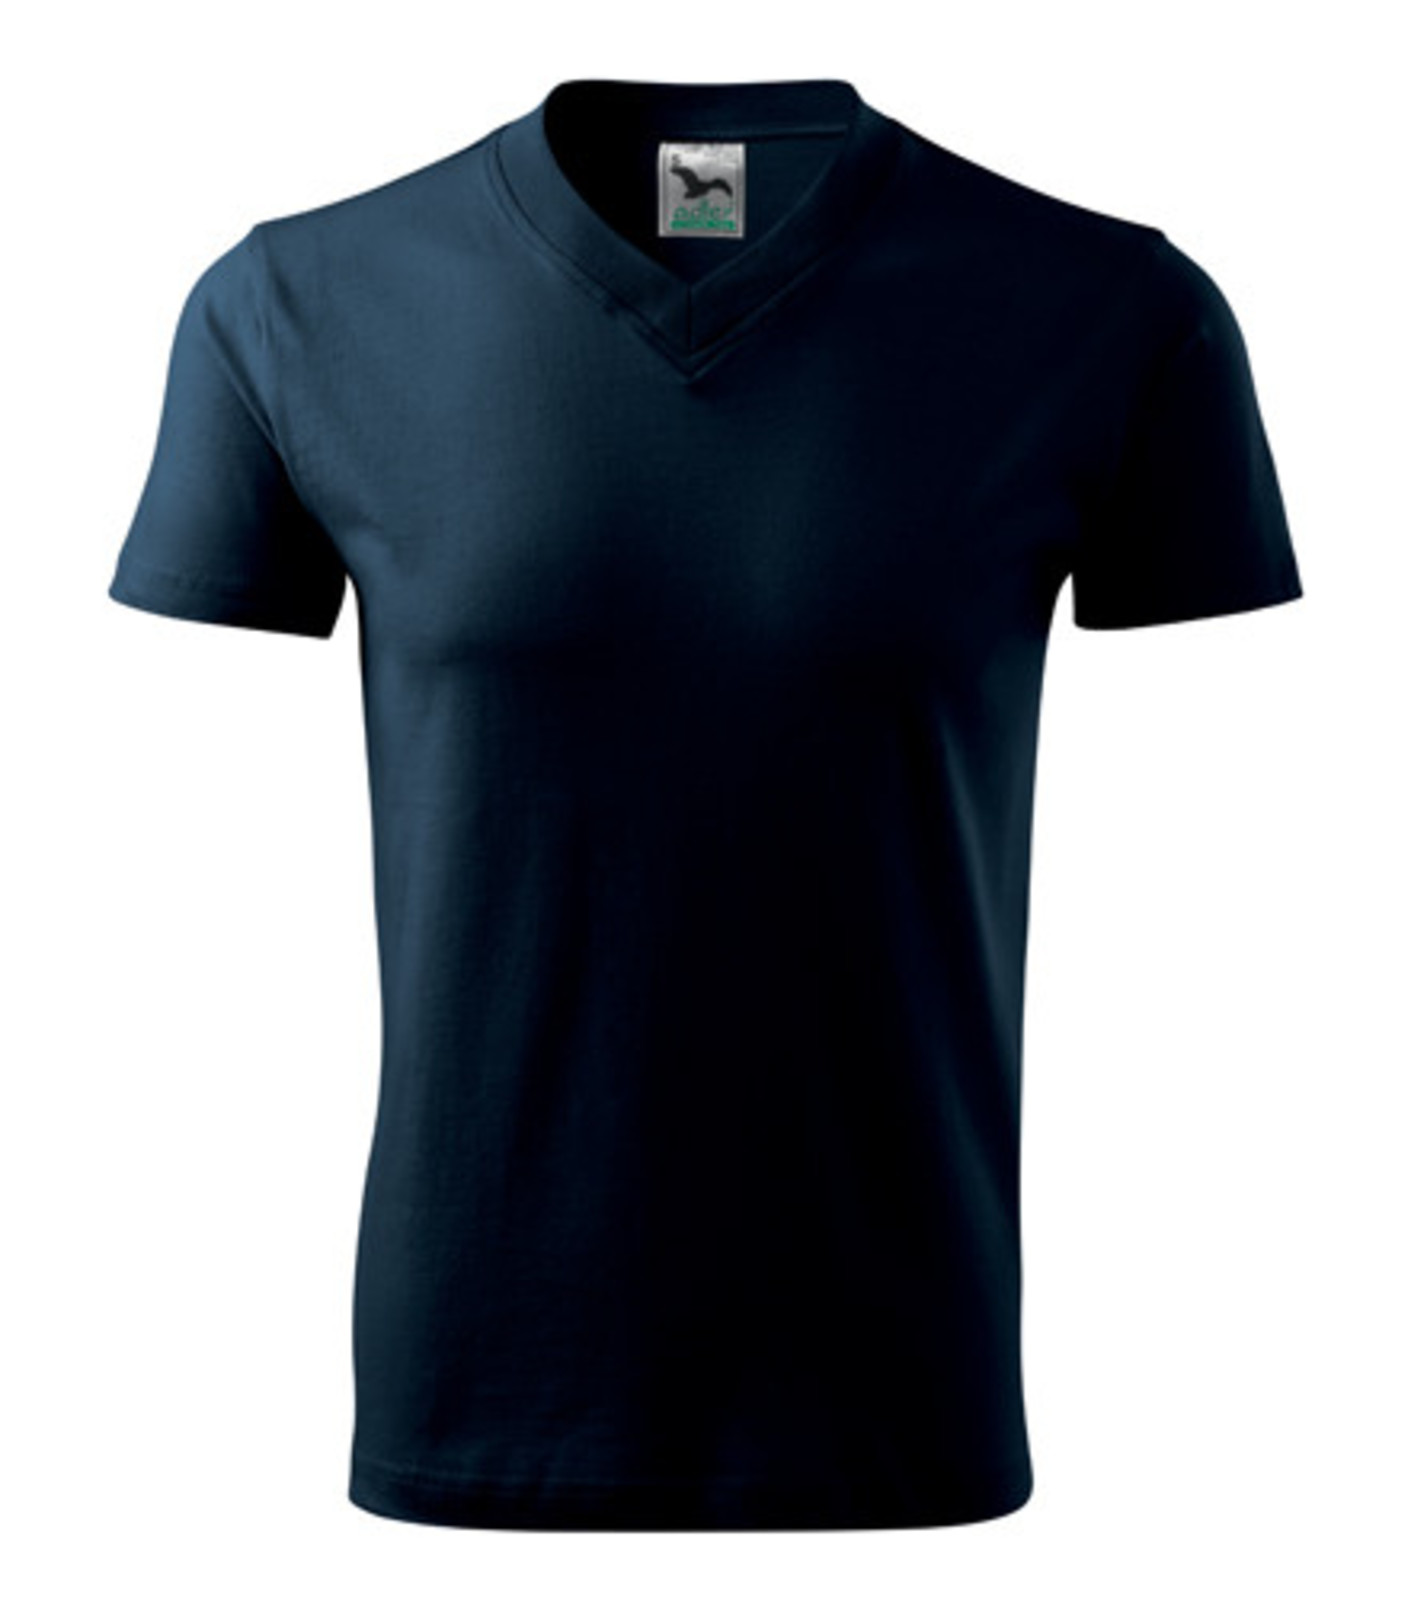 Unisex tričko s výstrihom Adler V-Neck 102 - veľkosť: L, farba: tmavo modrá